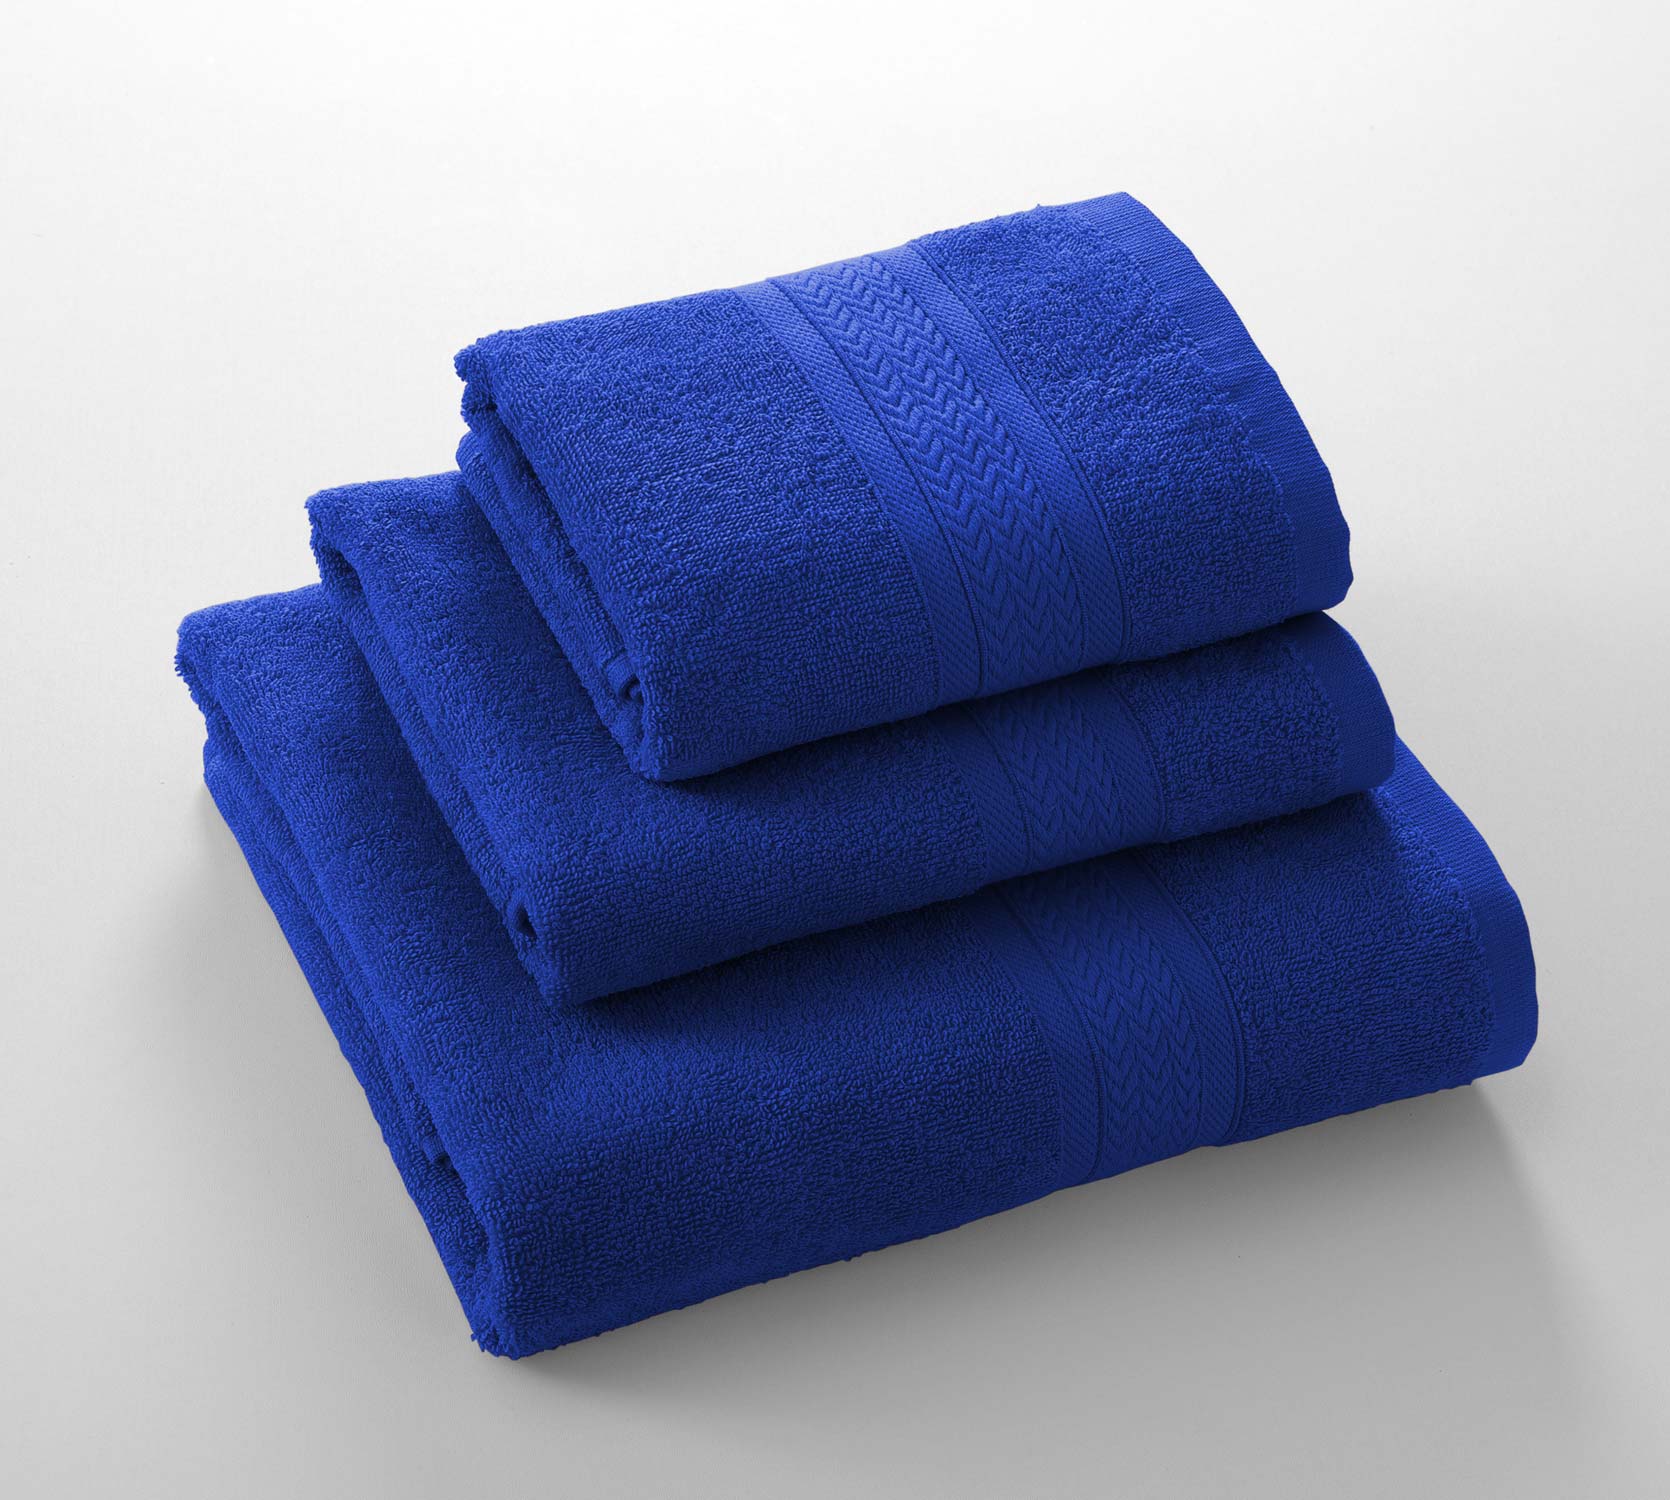 Полотенца утро. Полотенце лайф комфорт. Голубое полотенце. Полотенца однотонные гладкокрашенные. Полотенце махровое.